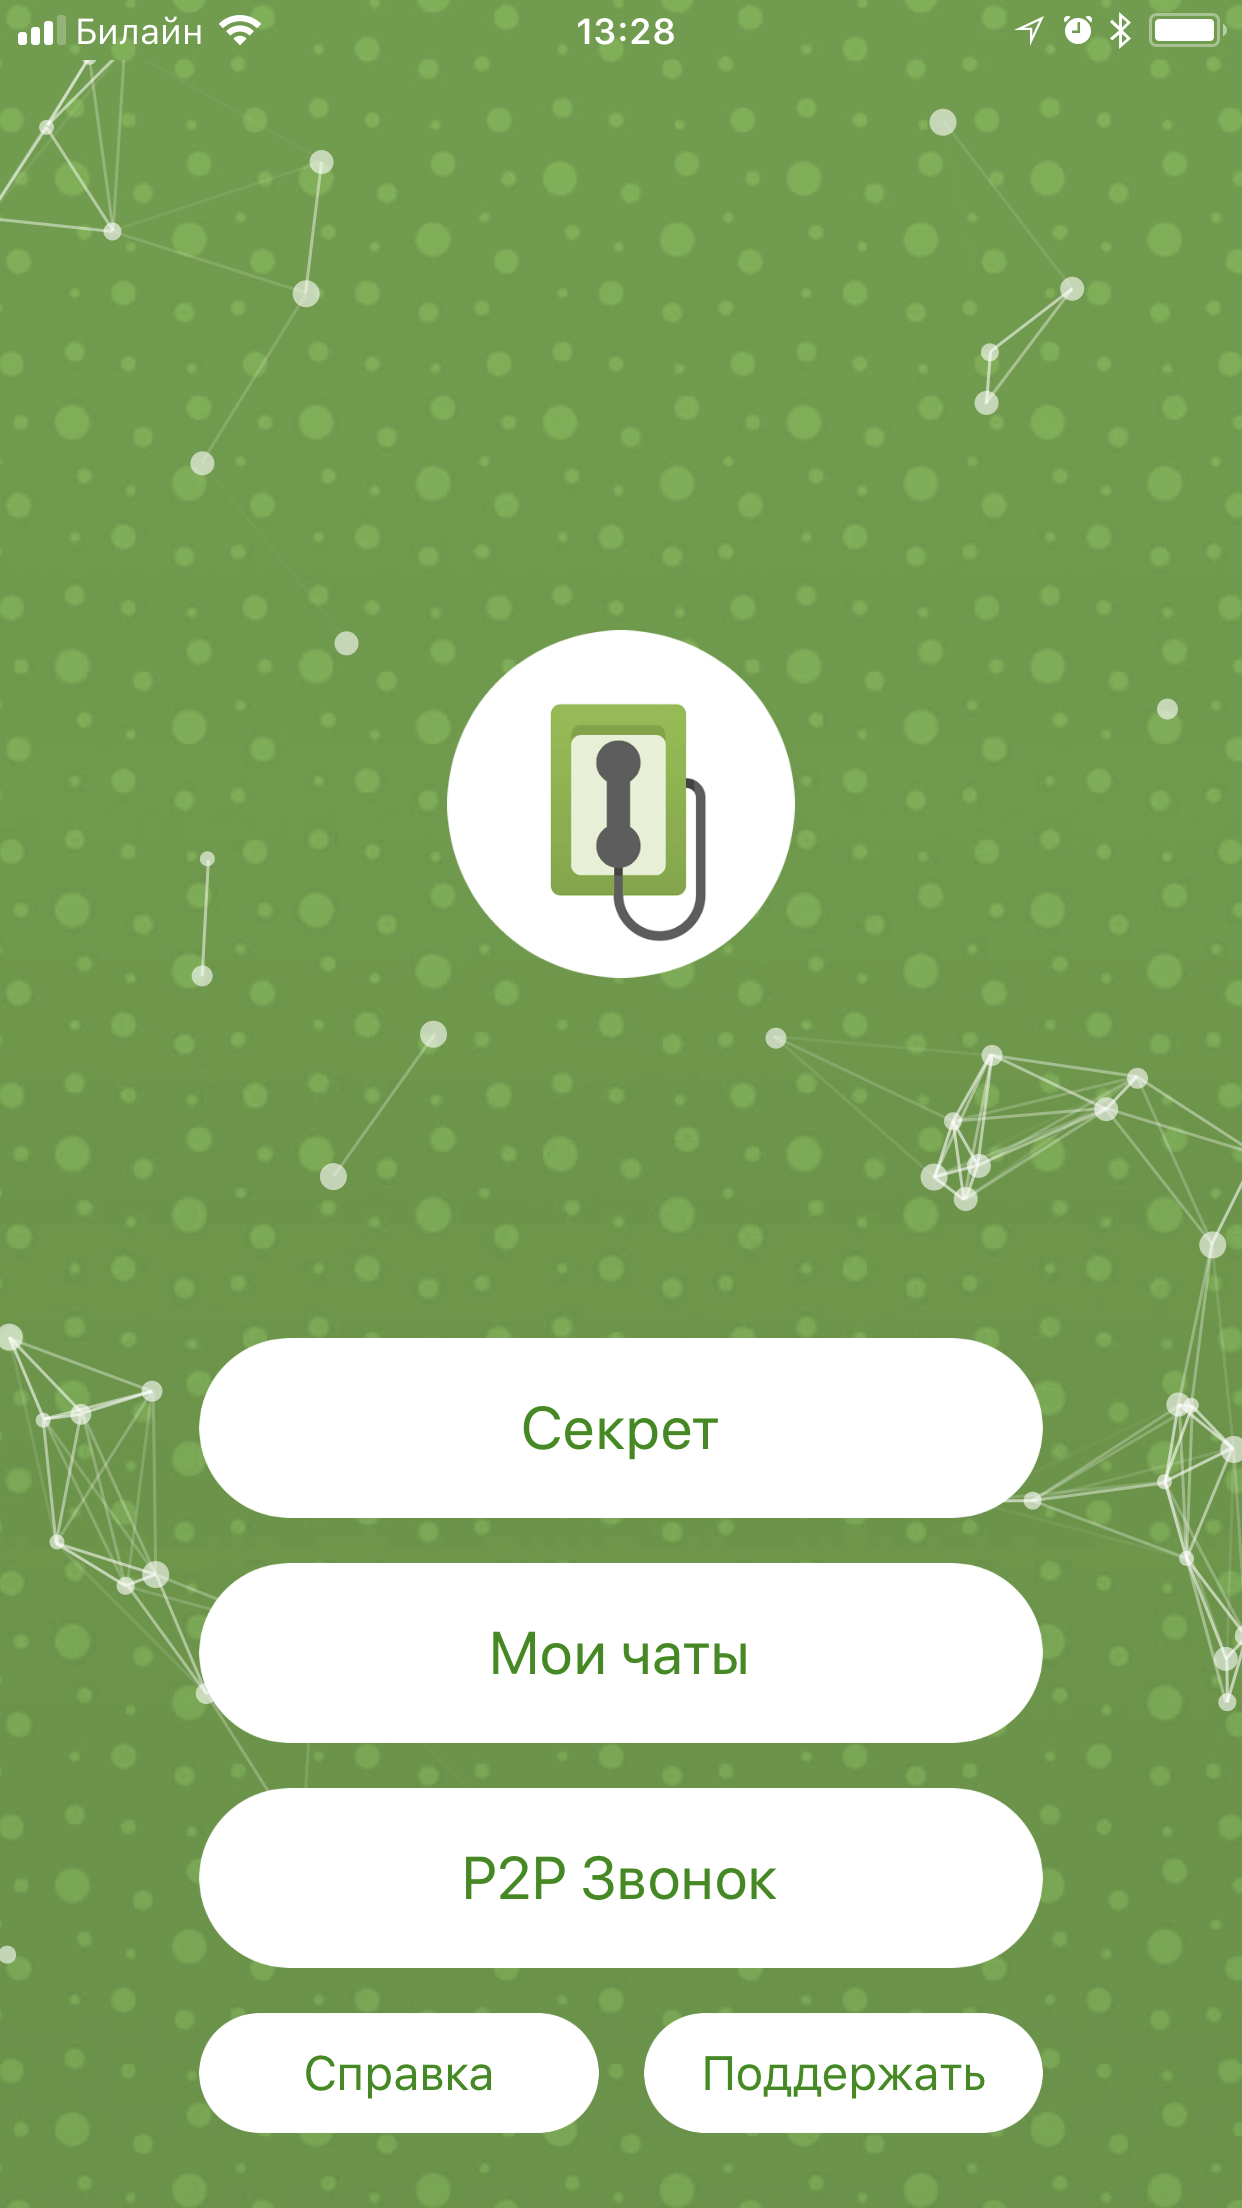 Как работает мессенджер на блокчейне для iPhone от российских разработчиков